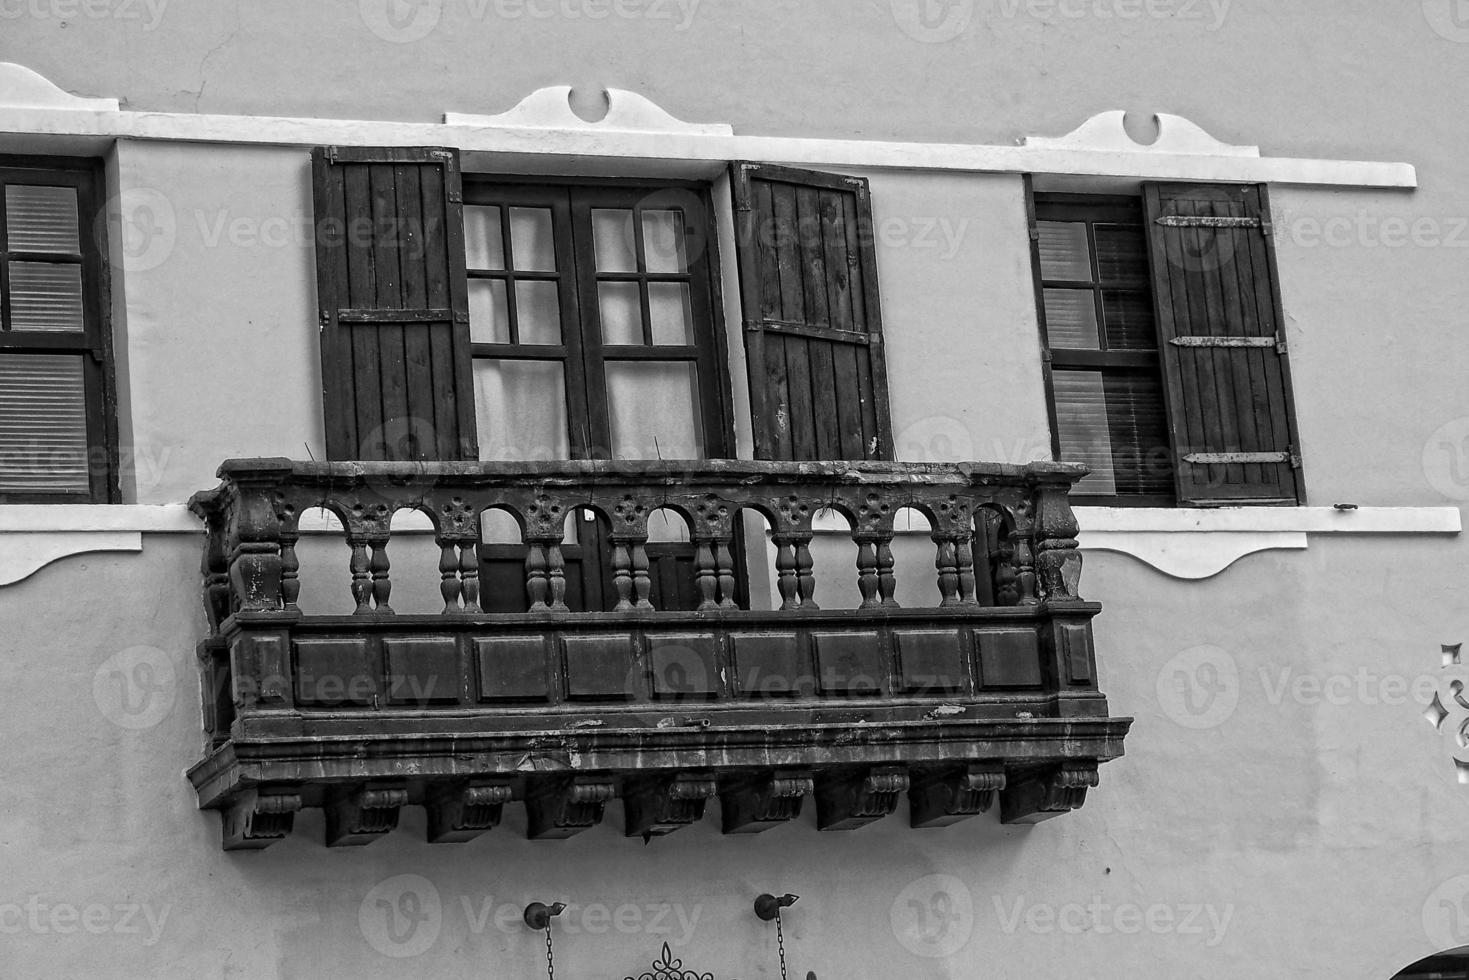 interesante vistoso fiesta casas en el calles de el Español ciudad de Sanca cruz en tenerife foto